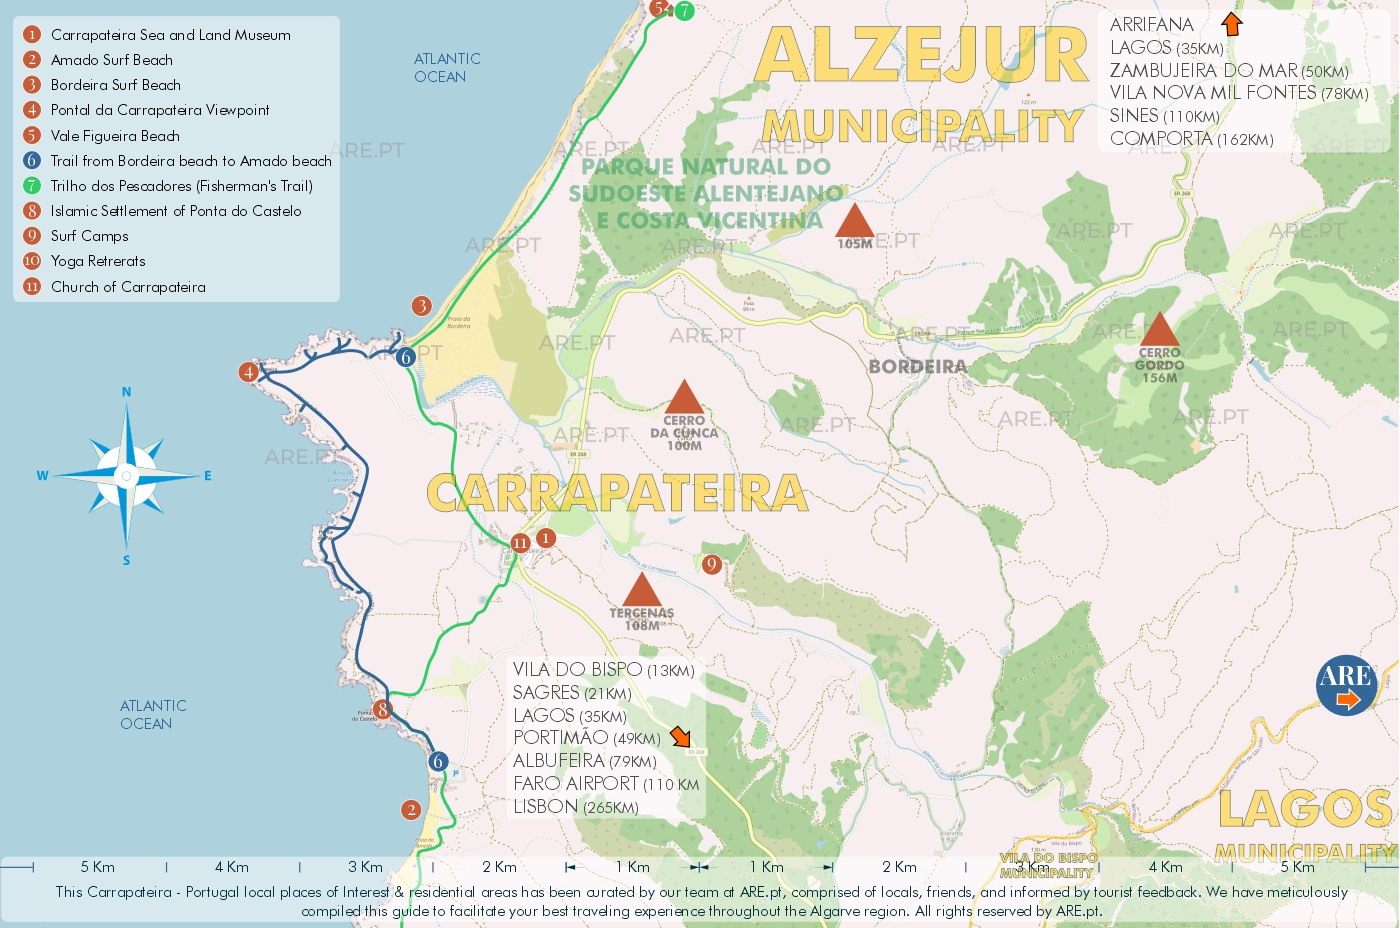 Mapa da Carrapateira e arredores, com principais pontos de interesse, localizações úteis e zonas residenciais. Distâncias às principais localidades do sul de Portugal